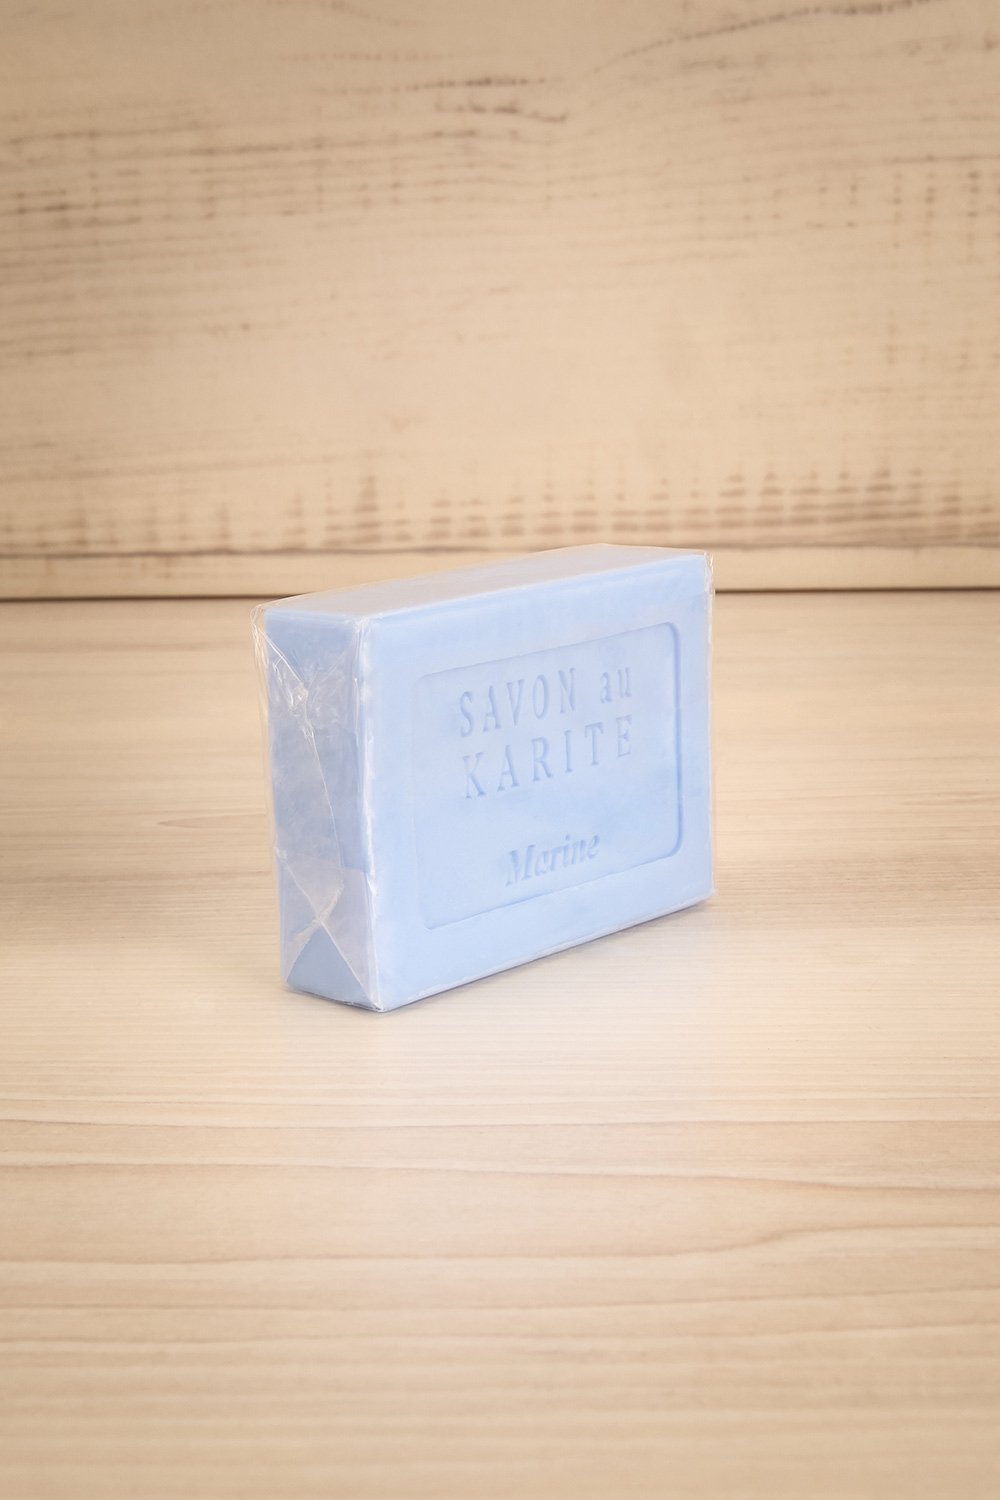 Savon au Karité Marine Shea Butter Soap | La Petite Garçonne Chpt. 2 1